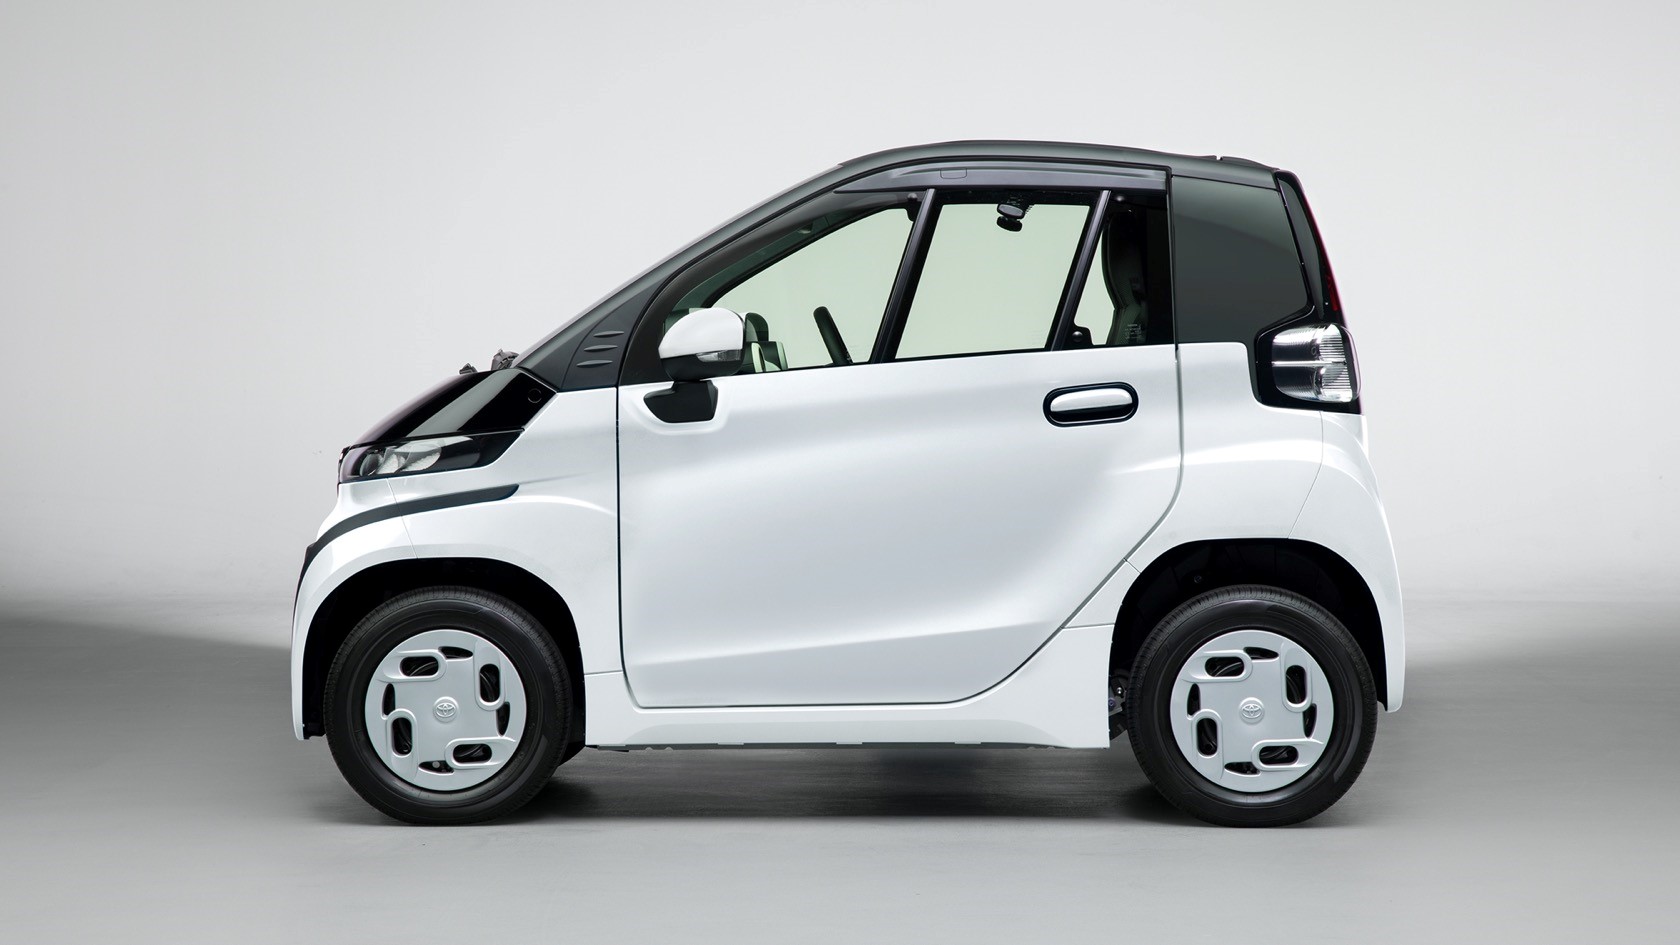 丰田C+pod是一款面临巨大挑战的小型电动汽车